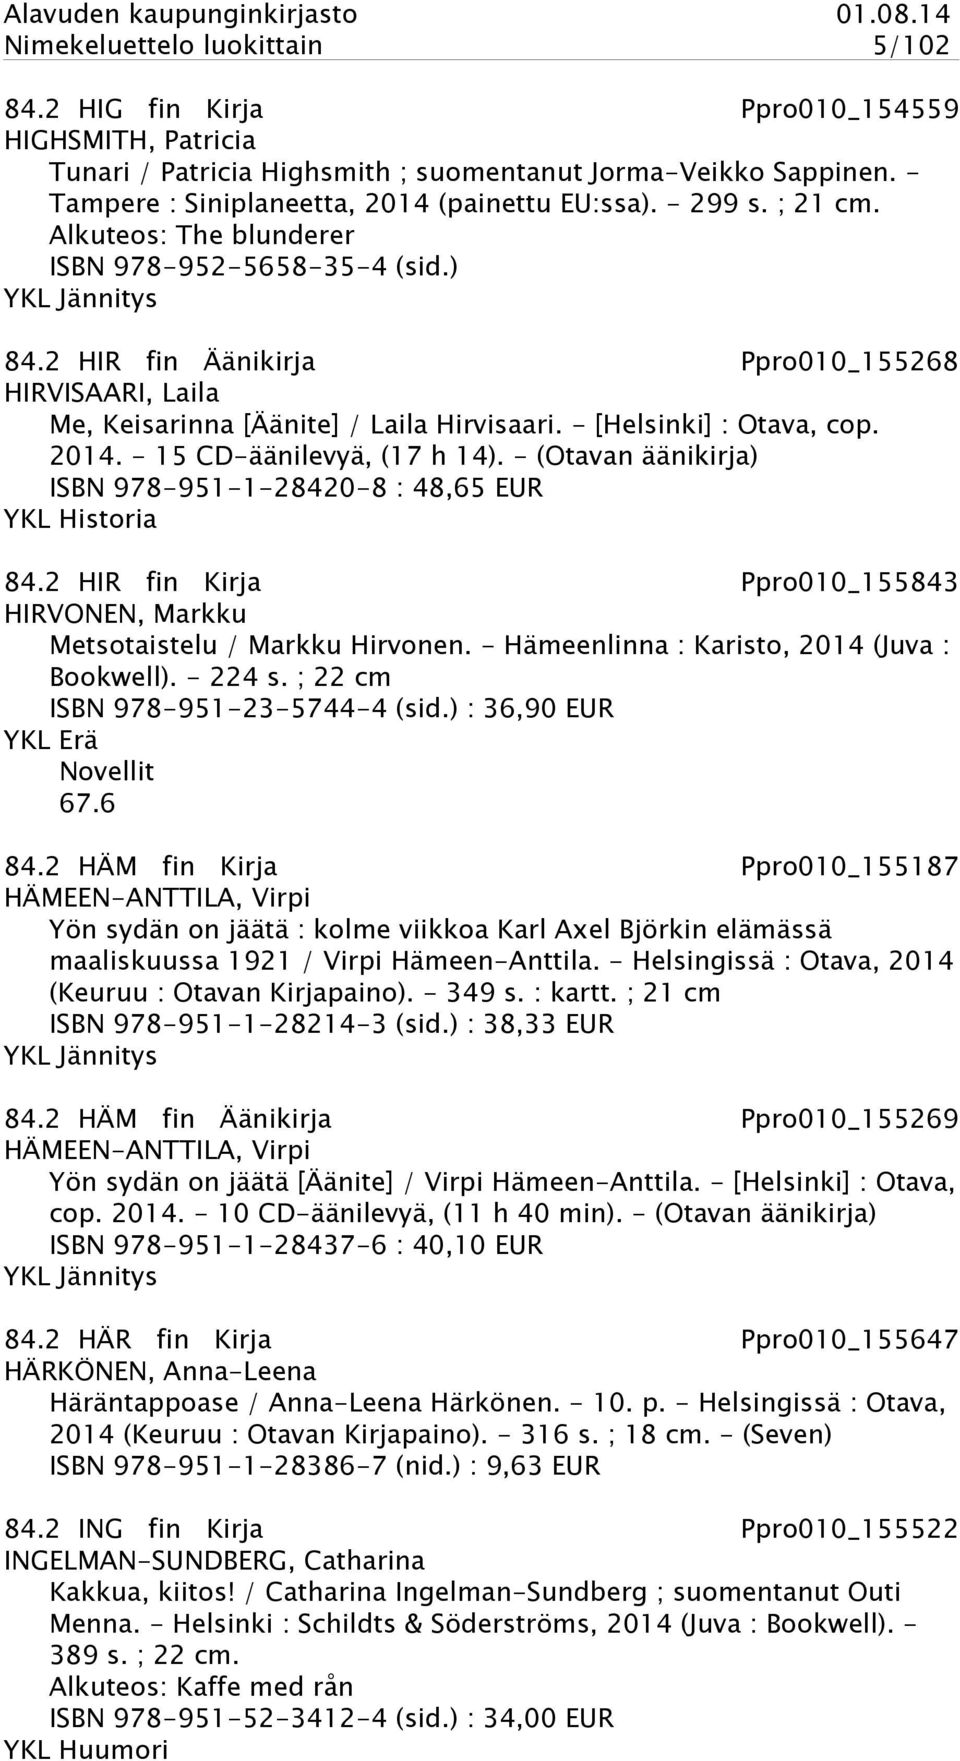 2 HIR fin Äänikirja Ppro010_155268 HIRVISAARI, Laila Me, Keisarinna [Äänite] / Laila Hirvisaari. - [Helsinki] : Otava, cop. 2014. - 15 CD-äänilevyä, (17 h 14).